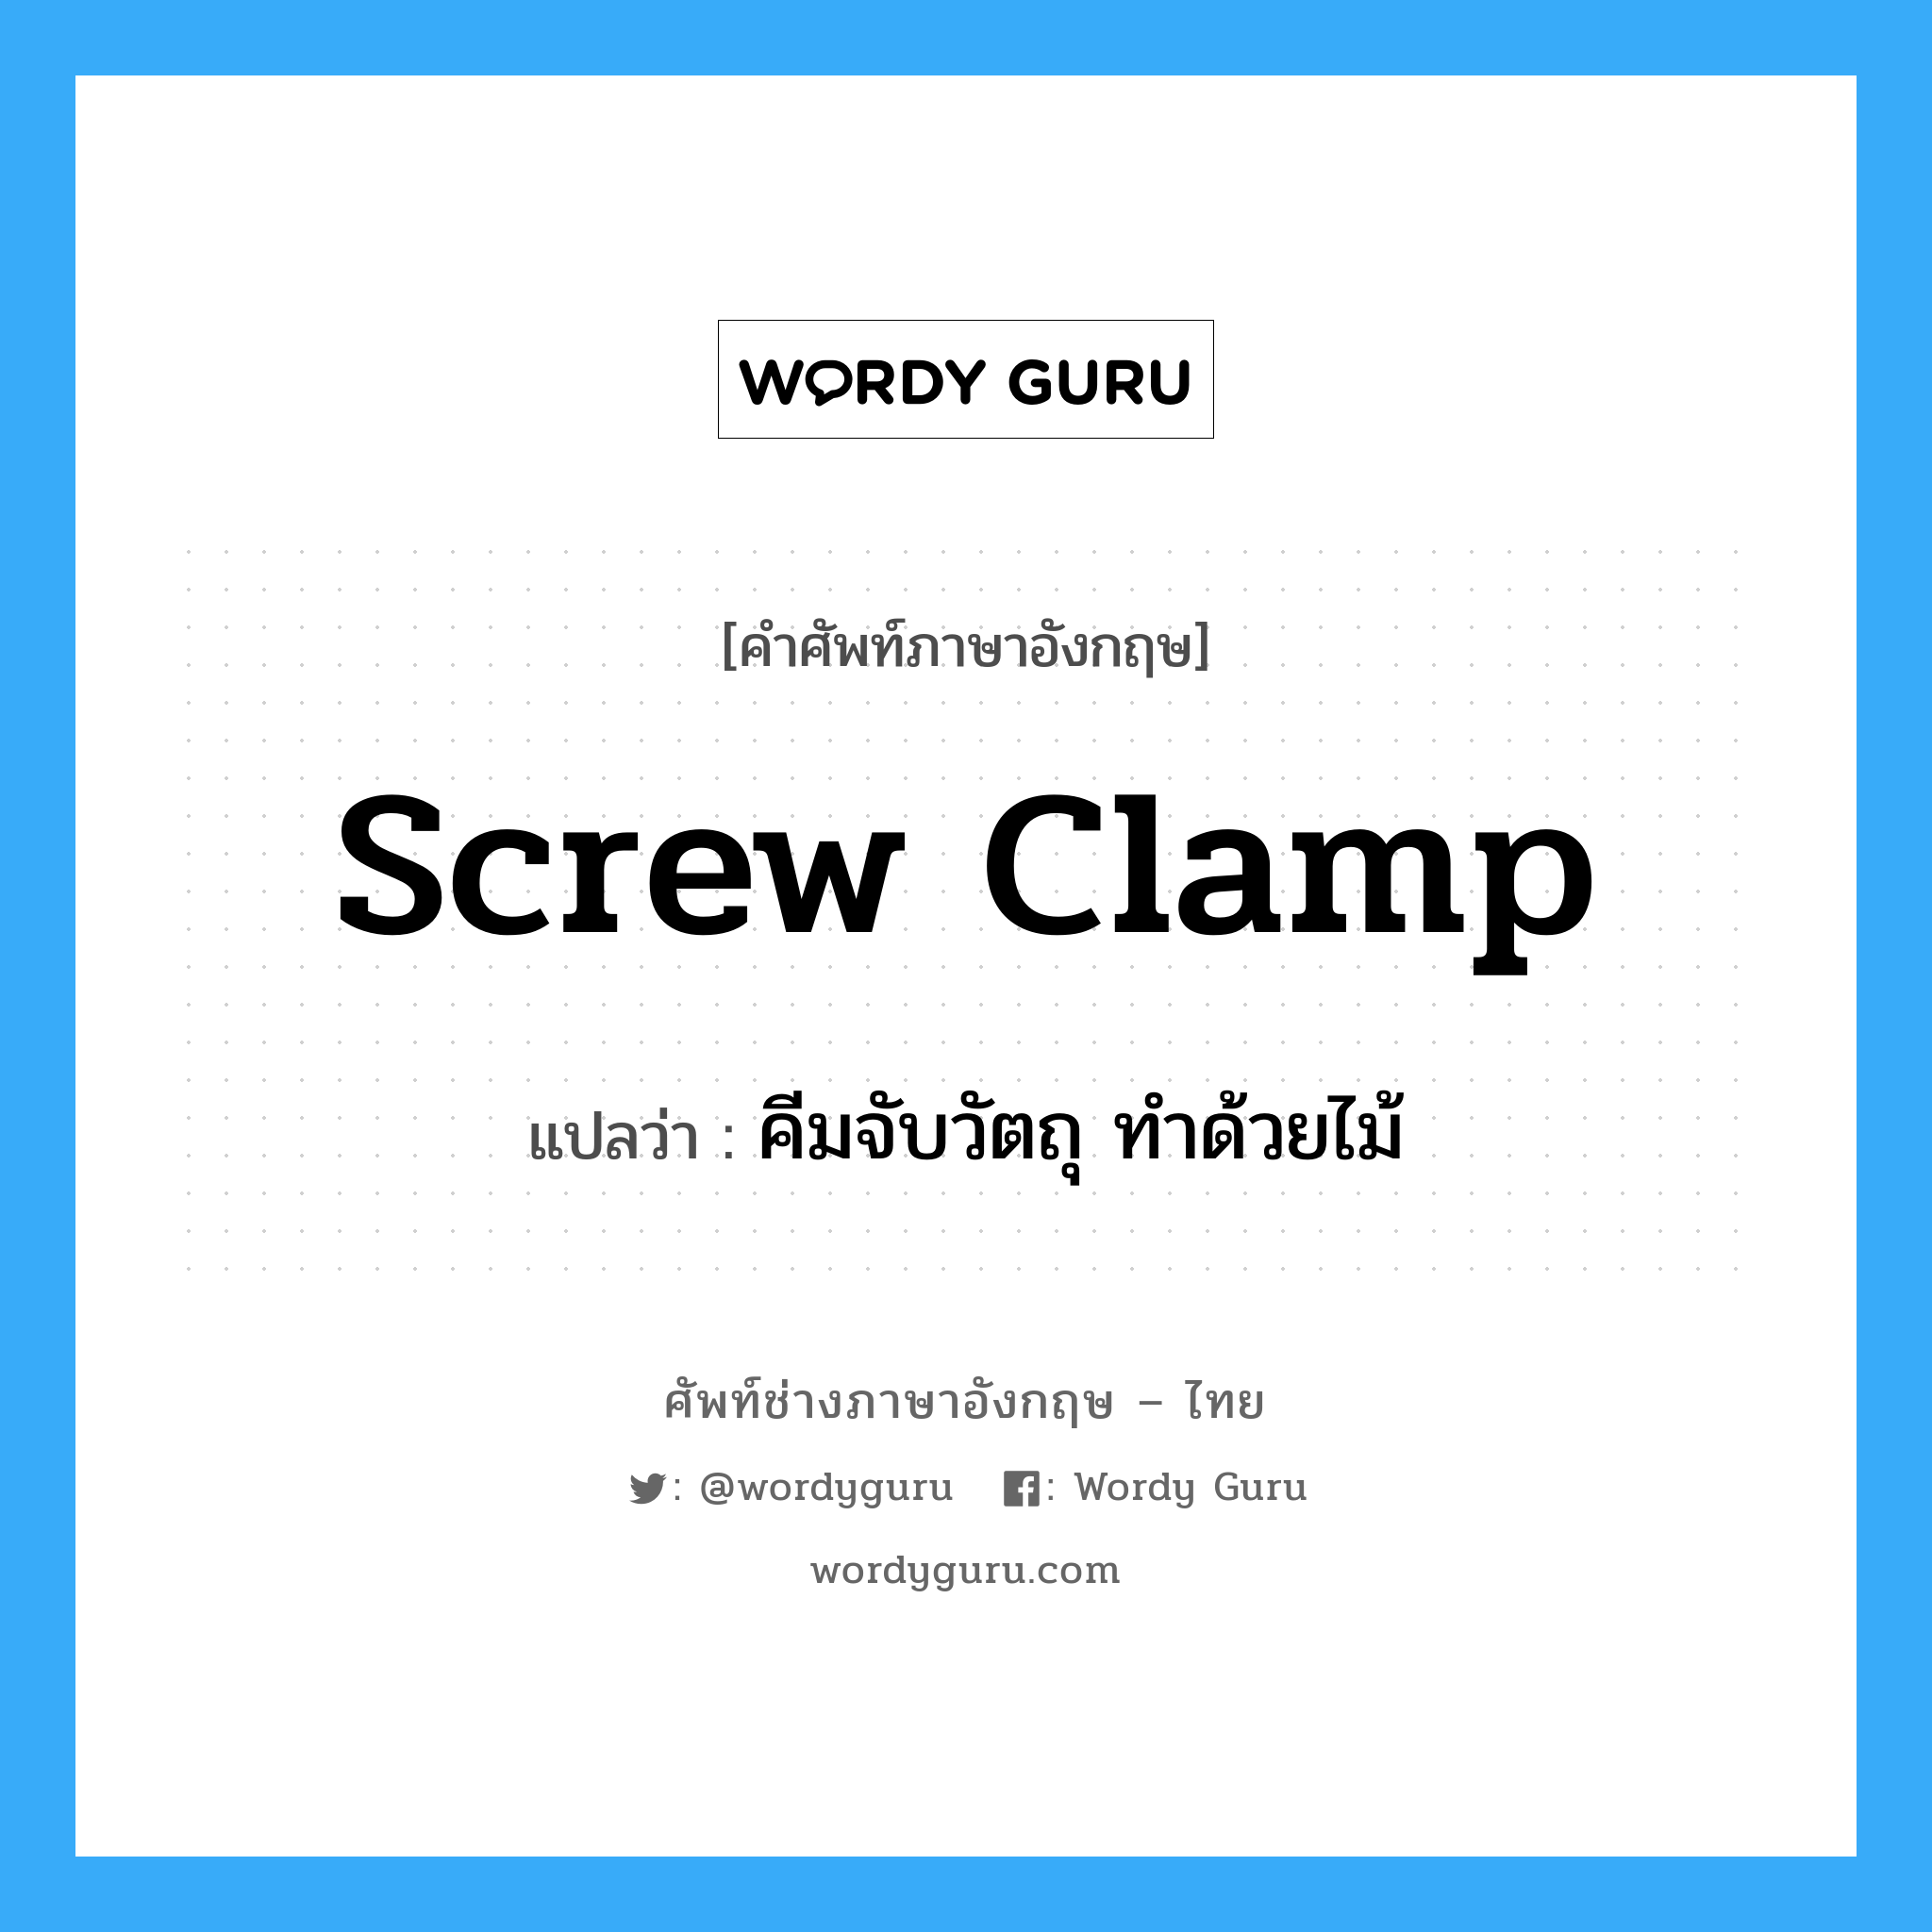 screw clamp แปลว่า?, คำศัพท์ช่างภาษาอังกฤษ - ไทย screw clamp คำศัพท์ภาษาอังกฤษ screw clamp แปลว่า คีมจับวัตถุ ทำด้วยไม้